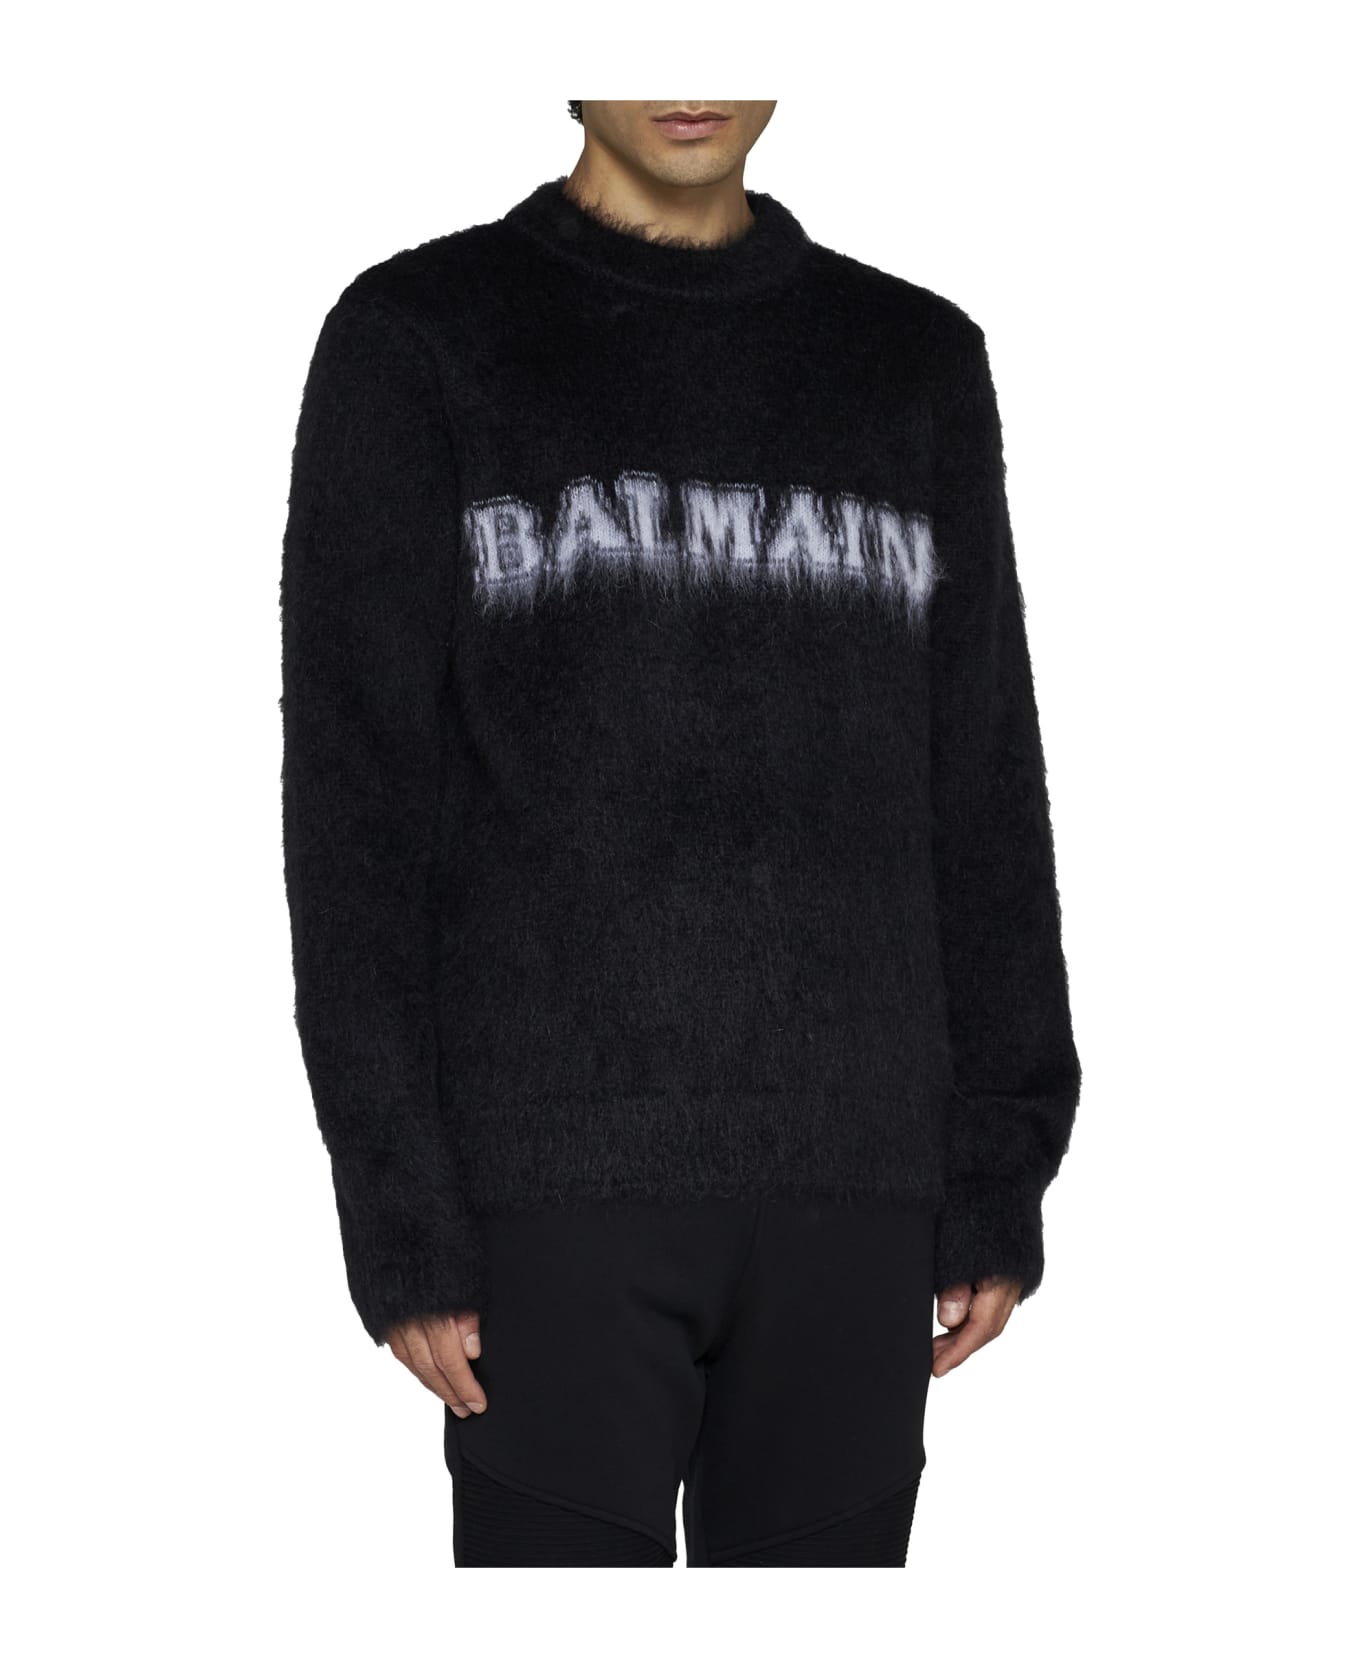 Balmain ' Retr Weater - Eab Noir Blanc